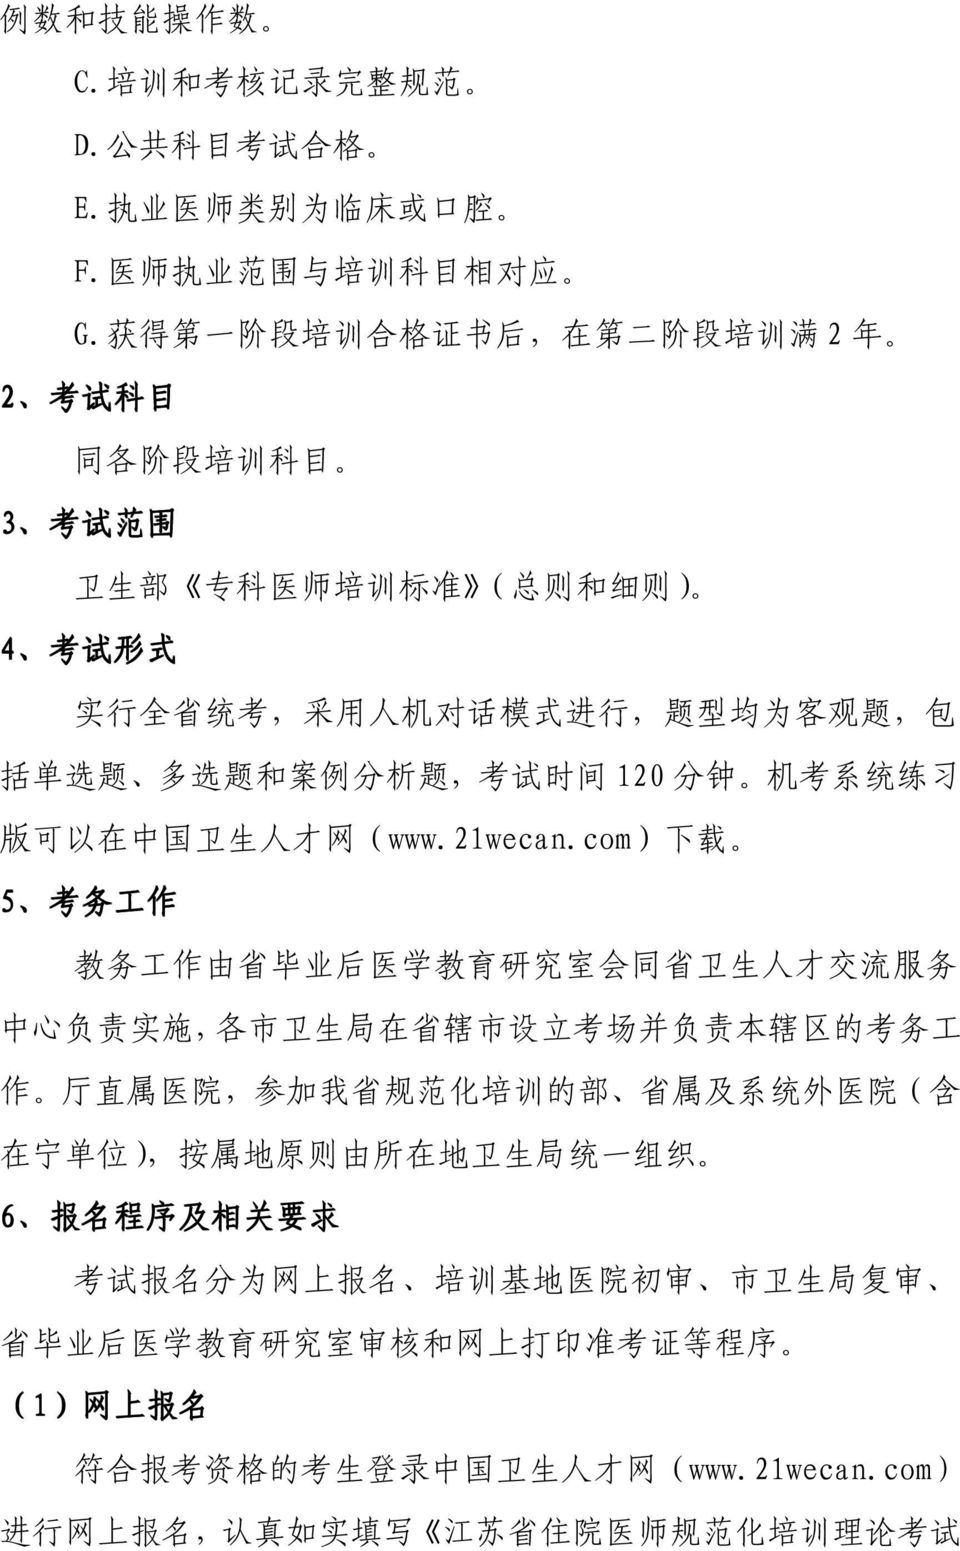 分 析 题, 考 试 时 间 120 分 钟 机 考 系 统 练 习 版 可 以 在 中 国 卫 生 人 才 网 (www.21wecan.